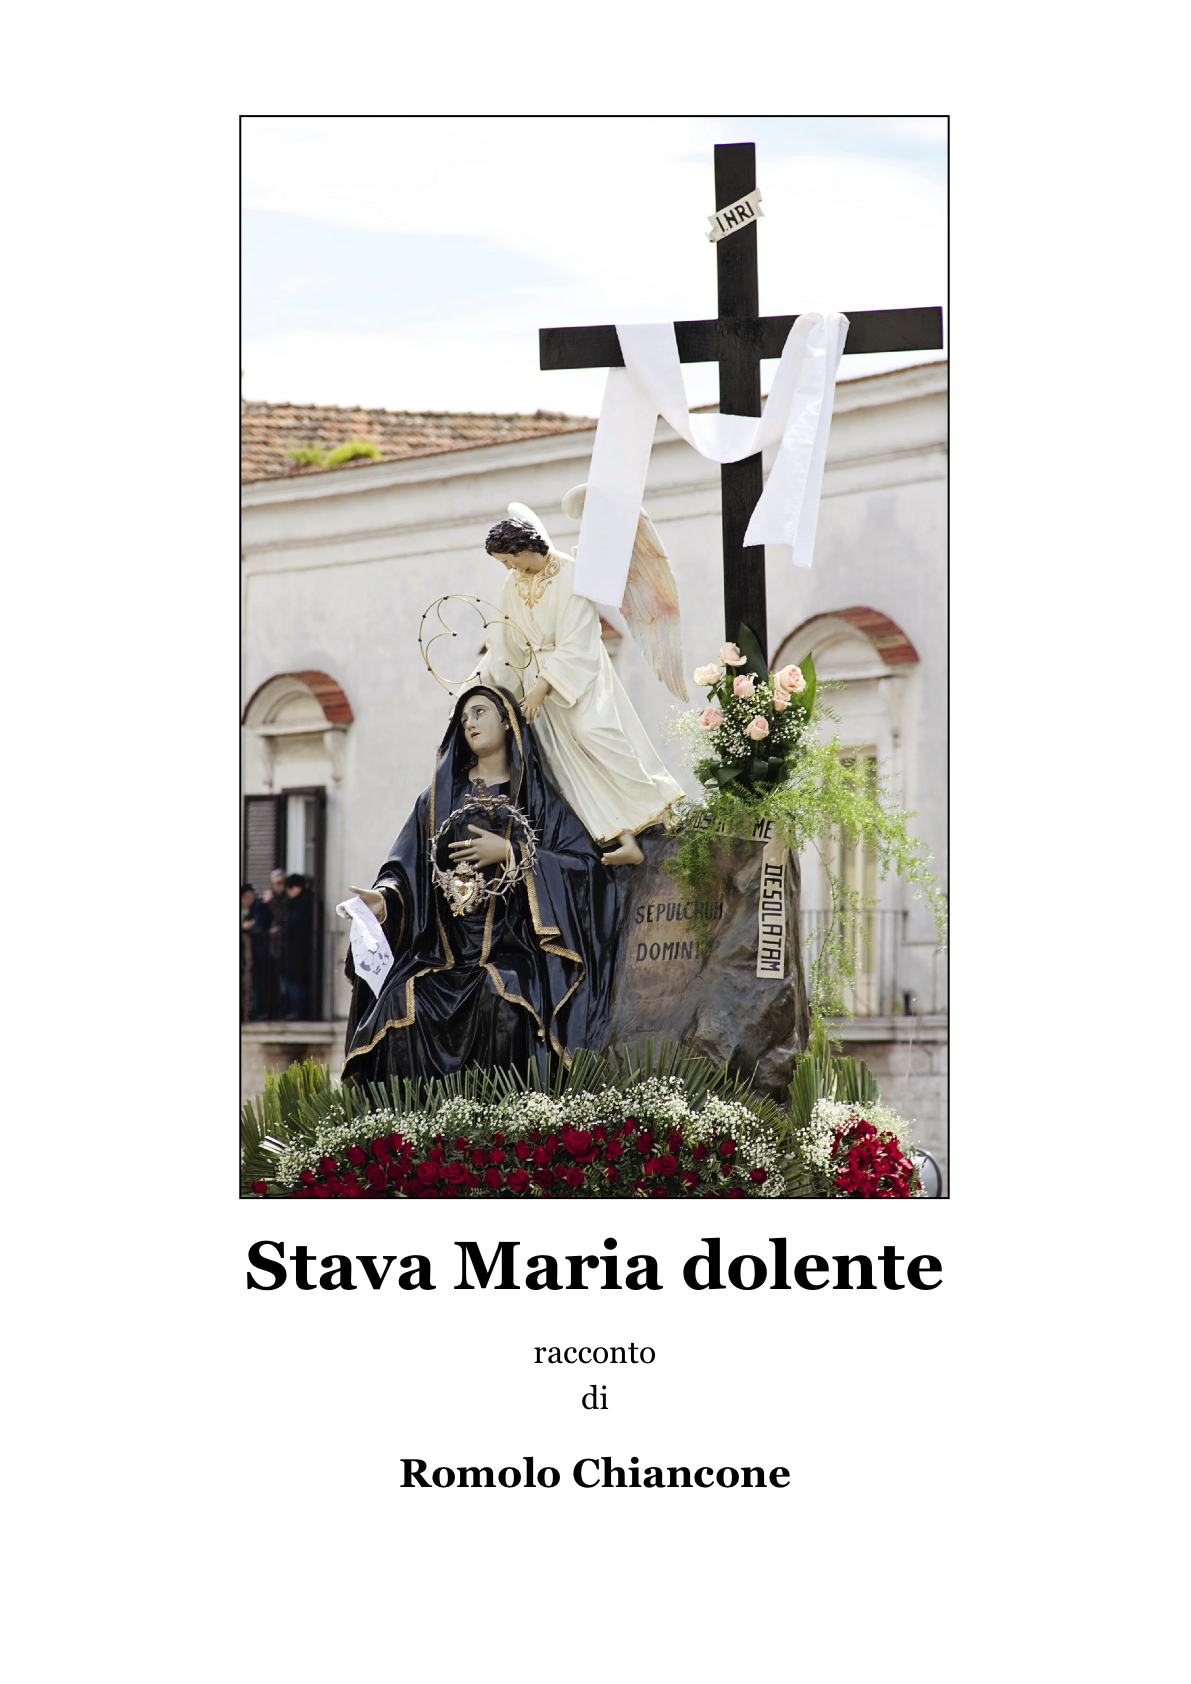 copertina del racconto Stava Maria Dolente (di Romolo Chiancone, copyright immagine: Rossella Inguscio 2014)